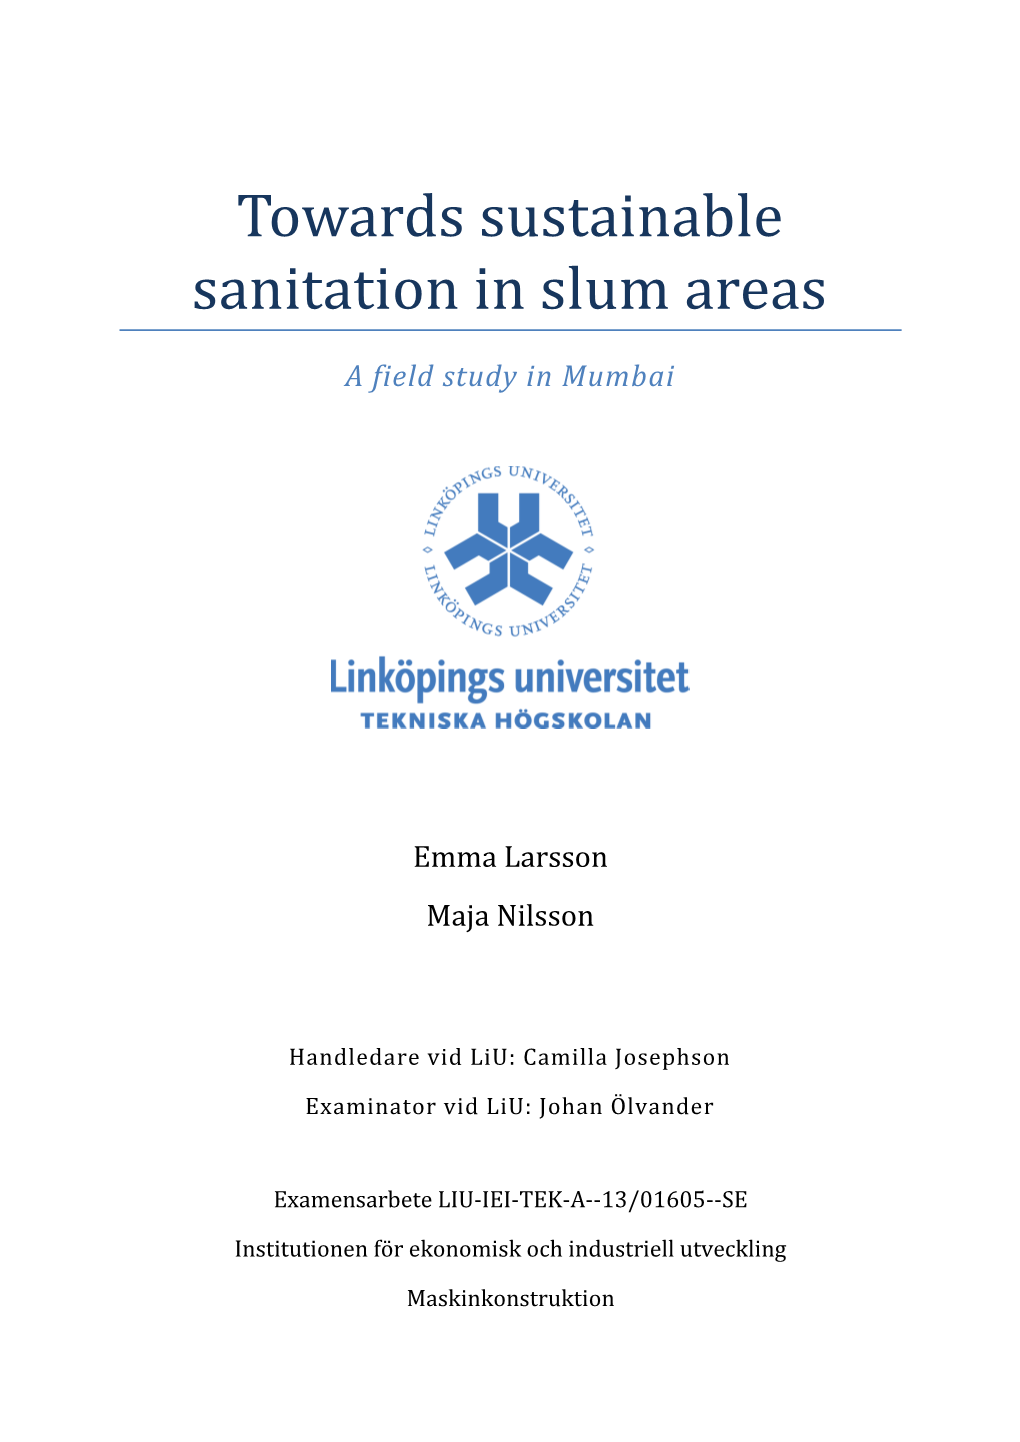 Towards Sustainable Sanitation in Slum Areas